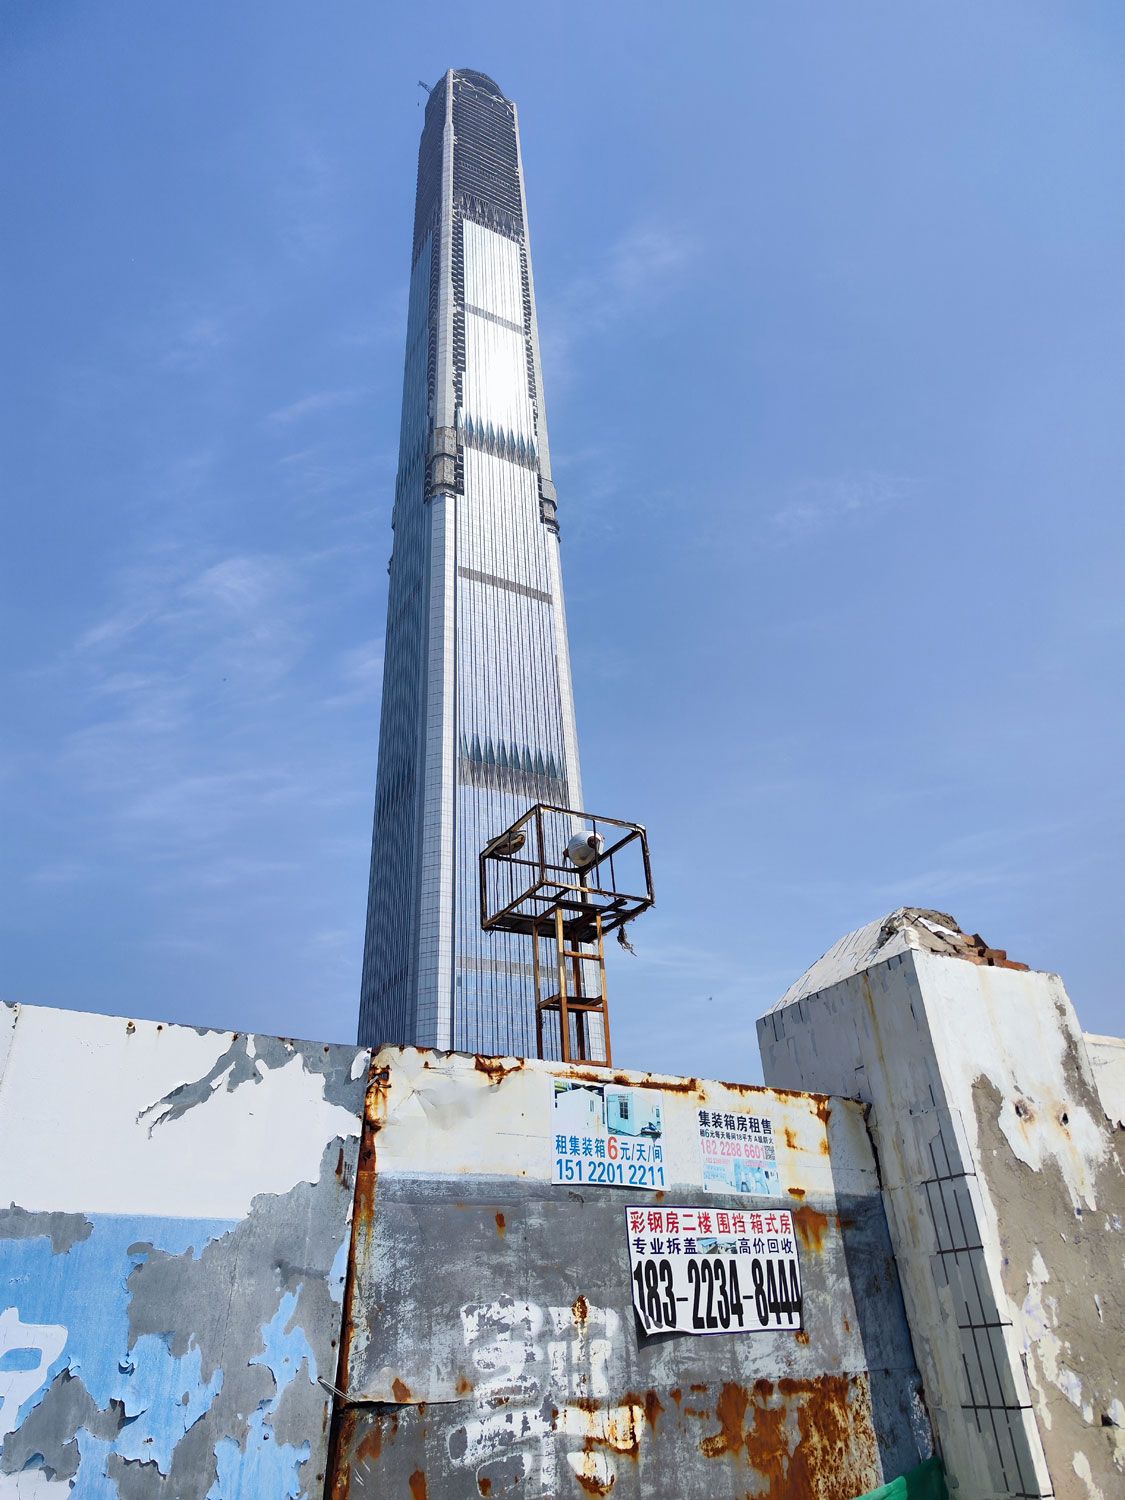 総額10兆円の明るい廃墟、593mの世界一高い未完成タワー…中国のスゴすぎるゴーストタウンはなぜ爆誕してしまったのか？ | 文春オンライン